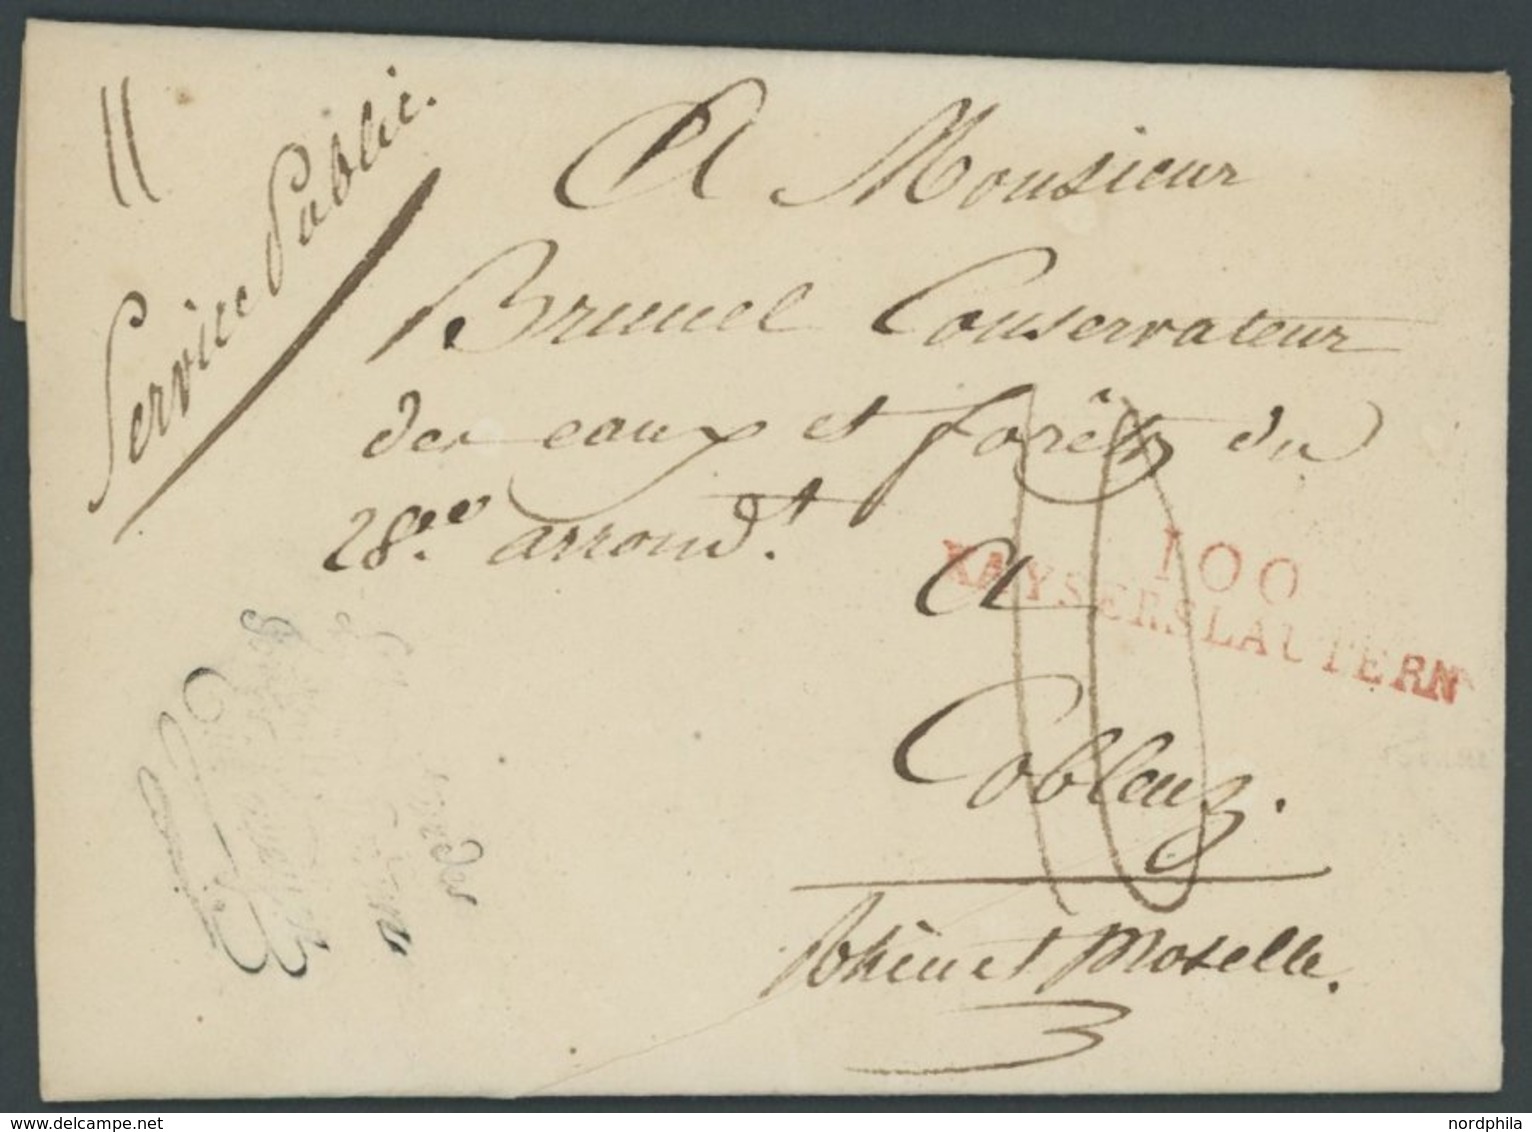 BAYERN 1810, 100 KAYERSLAUTERN, Roter L2, Auf Persönlichem Briefpapier Von Charles Eickemeyer, Taxiert, Prachtbrief - Préphilatélie